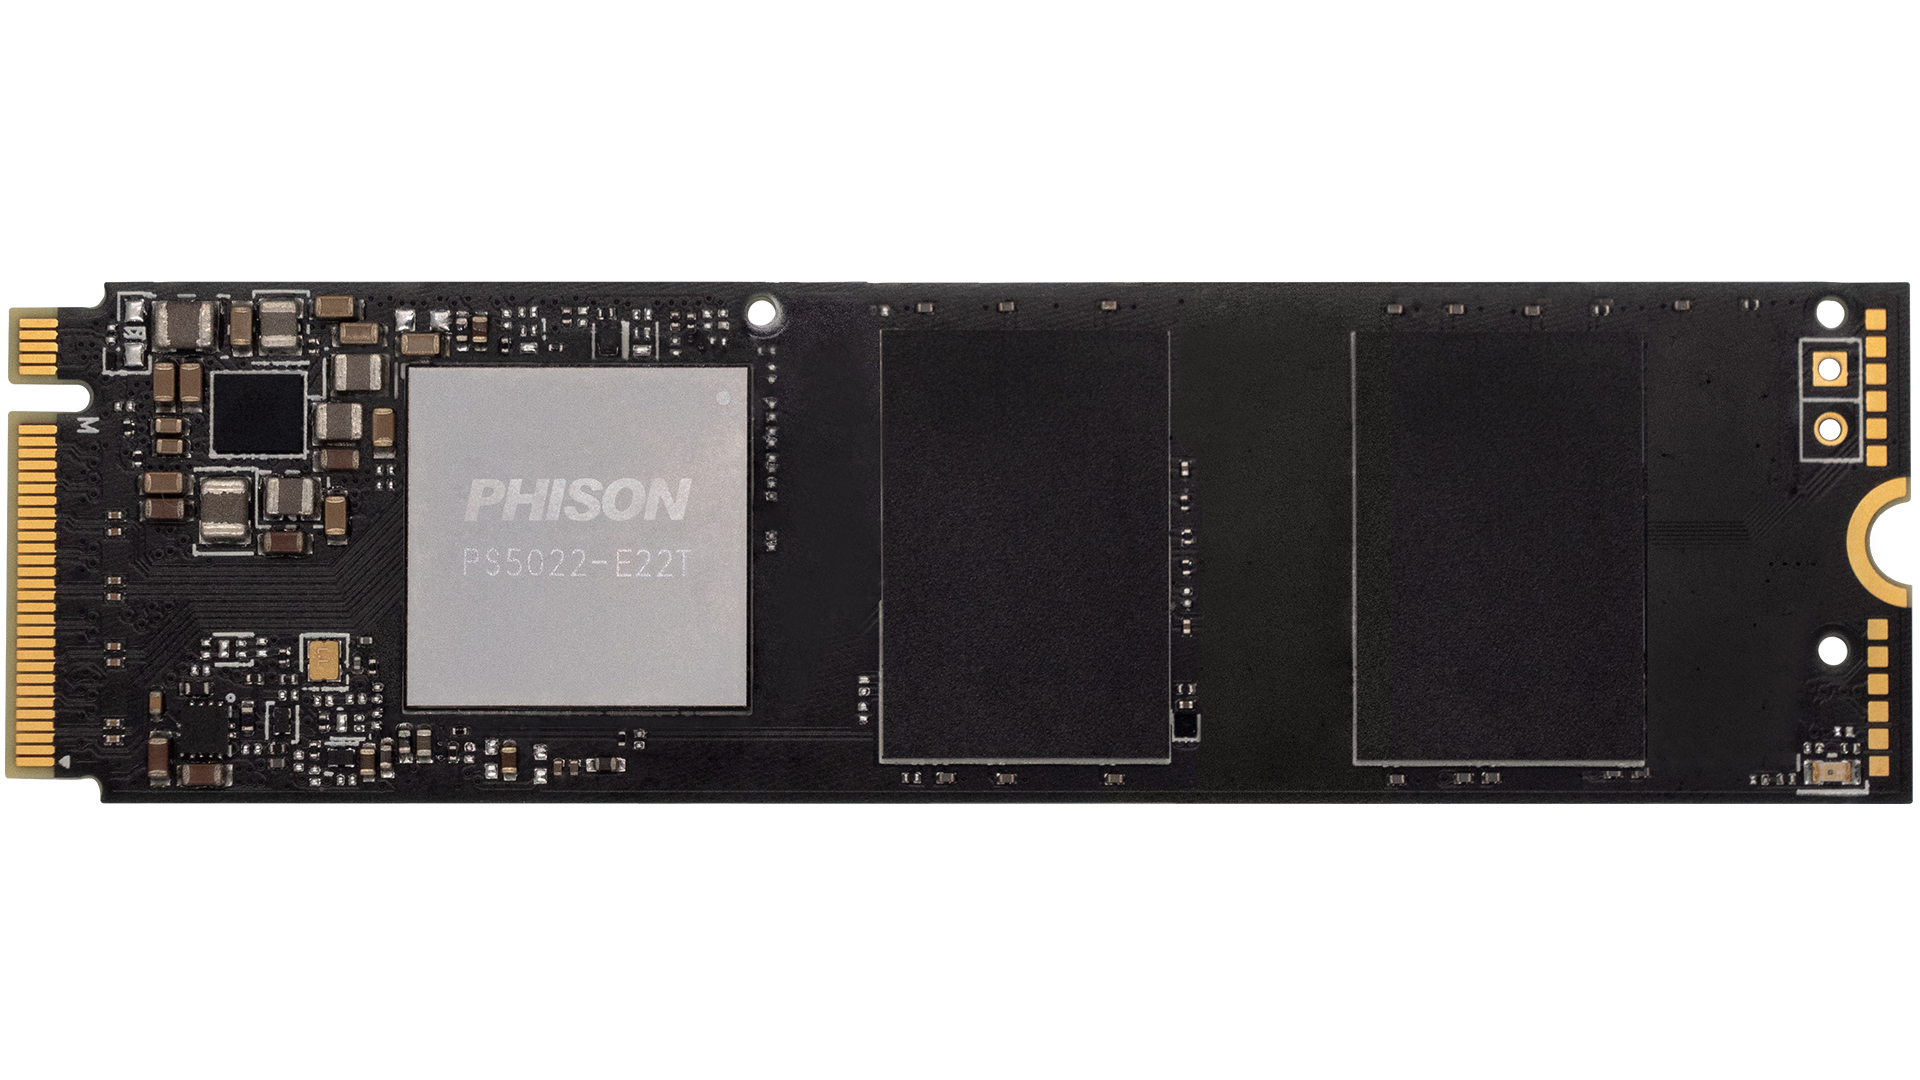 次世代車用PCIe 4.0 SSD儲存控制晶片